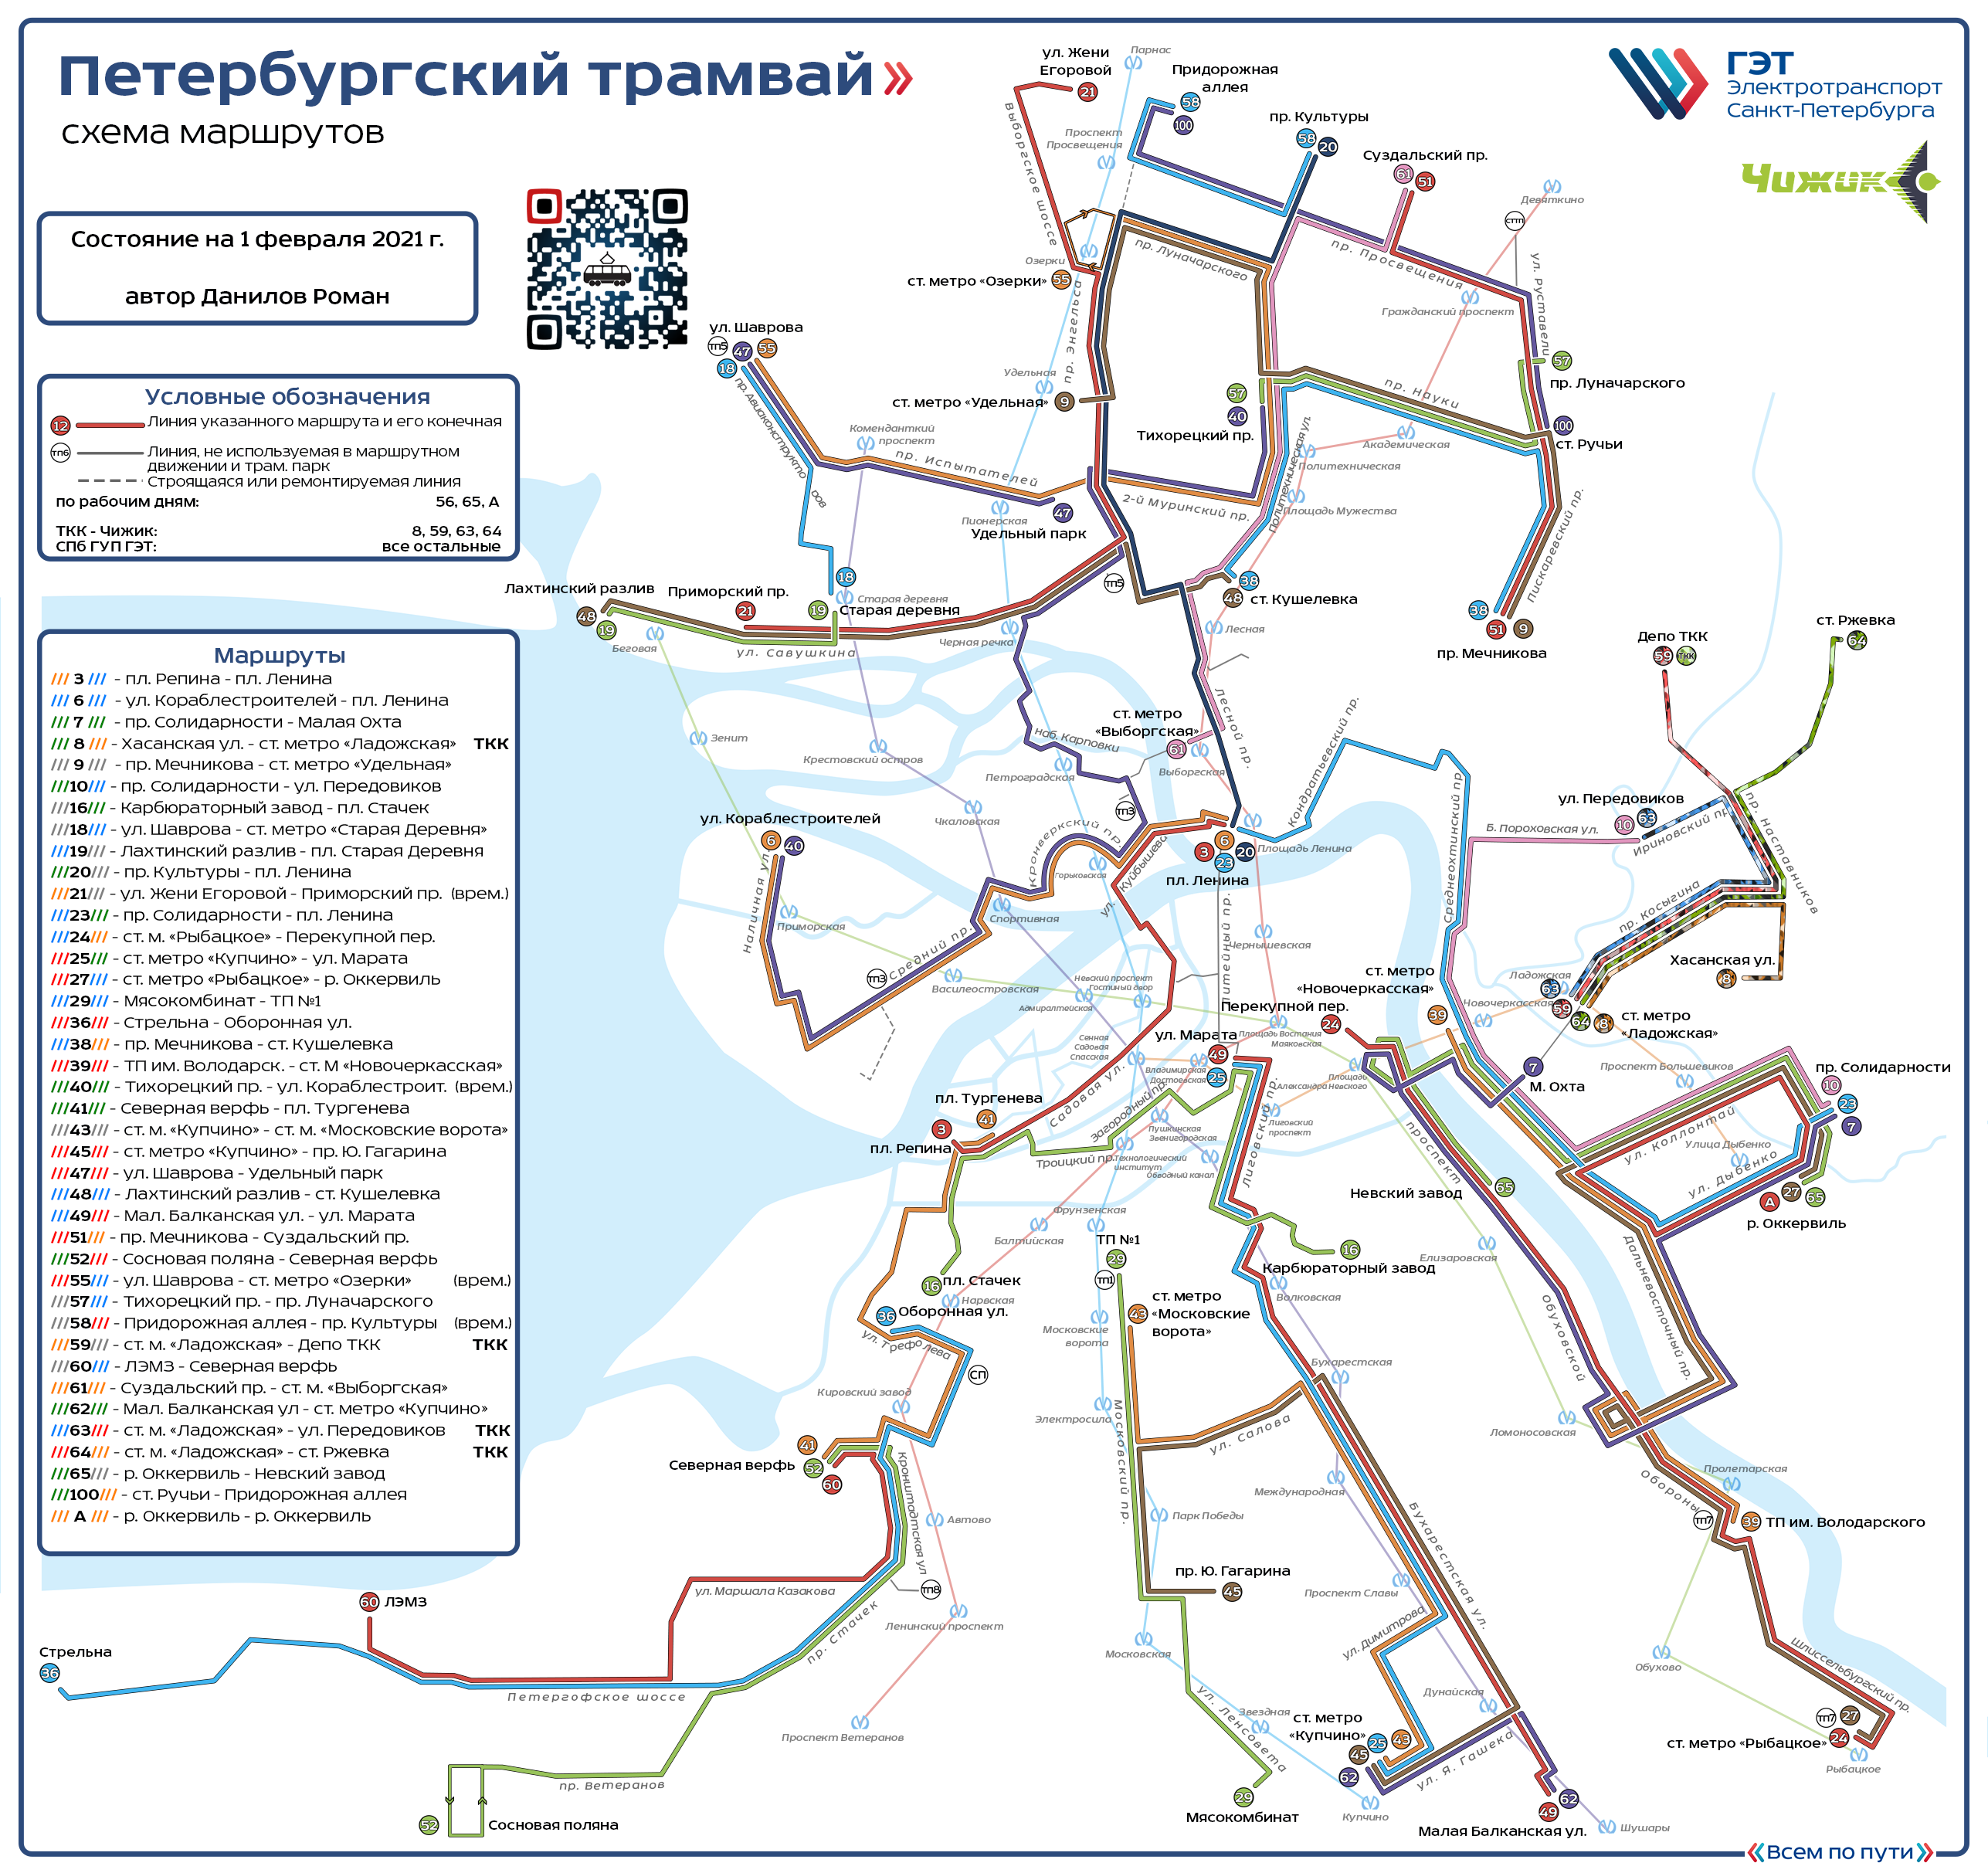 Санкт-Петербург — Общегородские схемы